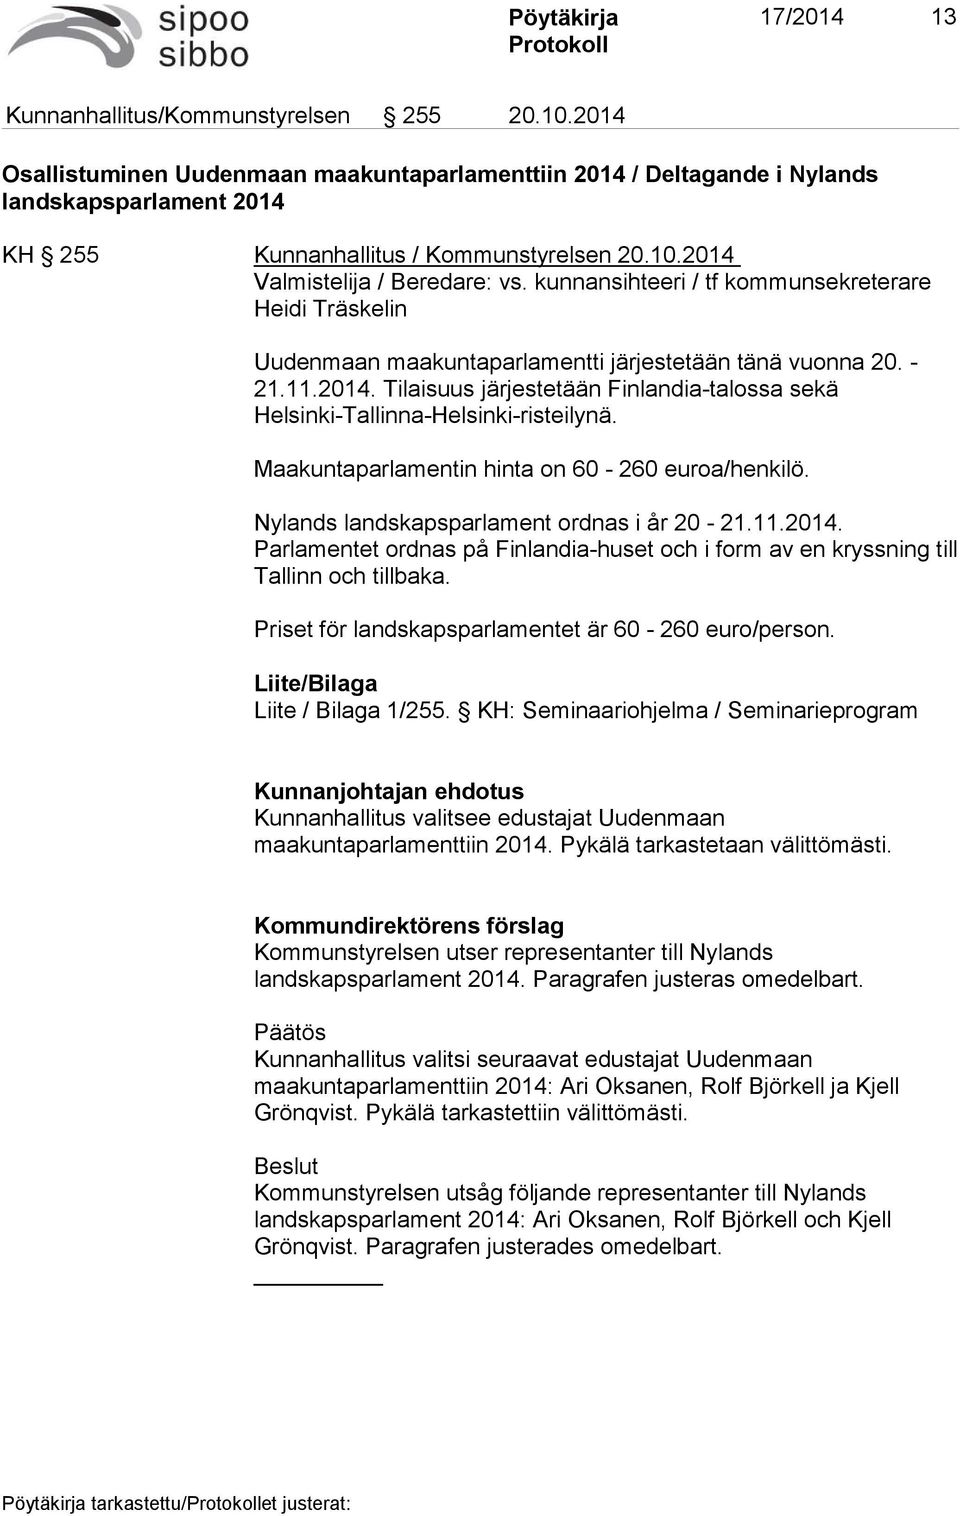 Maakuntaparlamentin hinta on 60-260 euroa/henkilö. Nylands landskapsparlament ordnas i år 20-21.11.2014. Parlamentet ordnas på Finlandia-huset och i form av en kryssning till Tallinn och tillbaka.